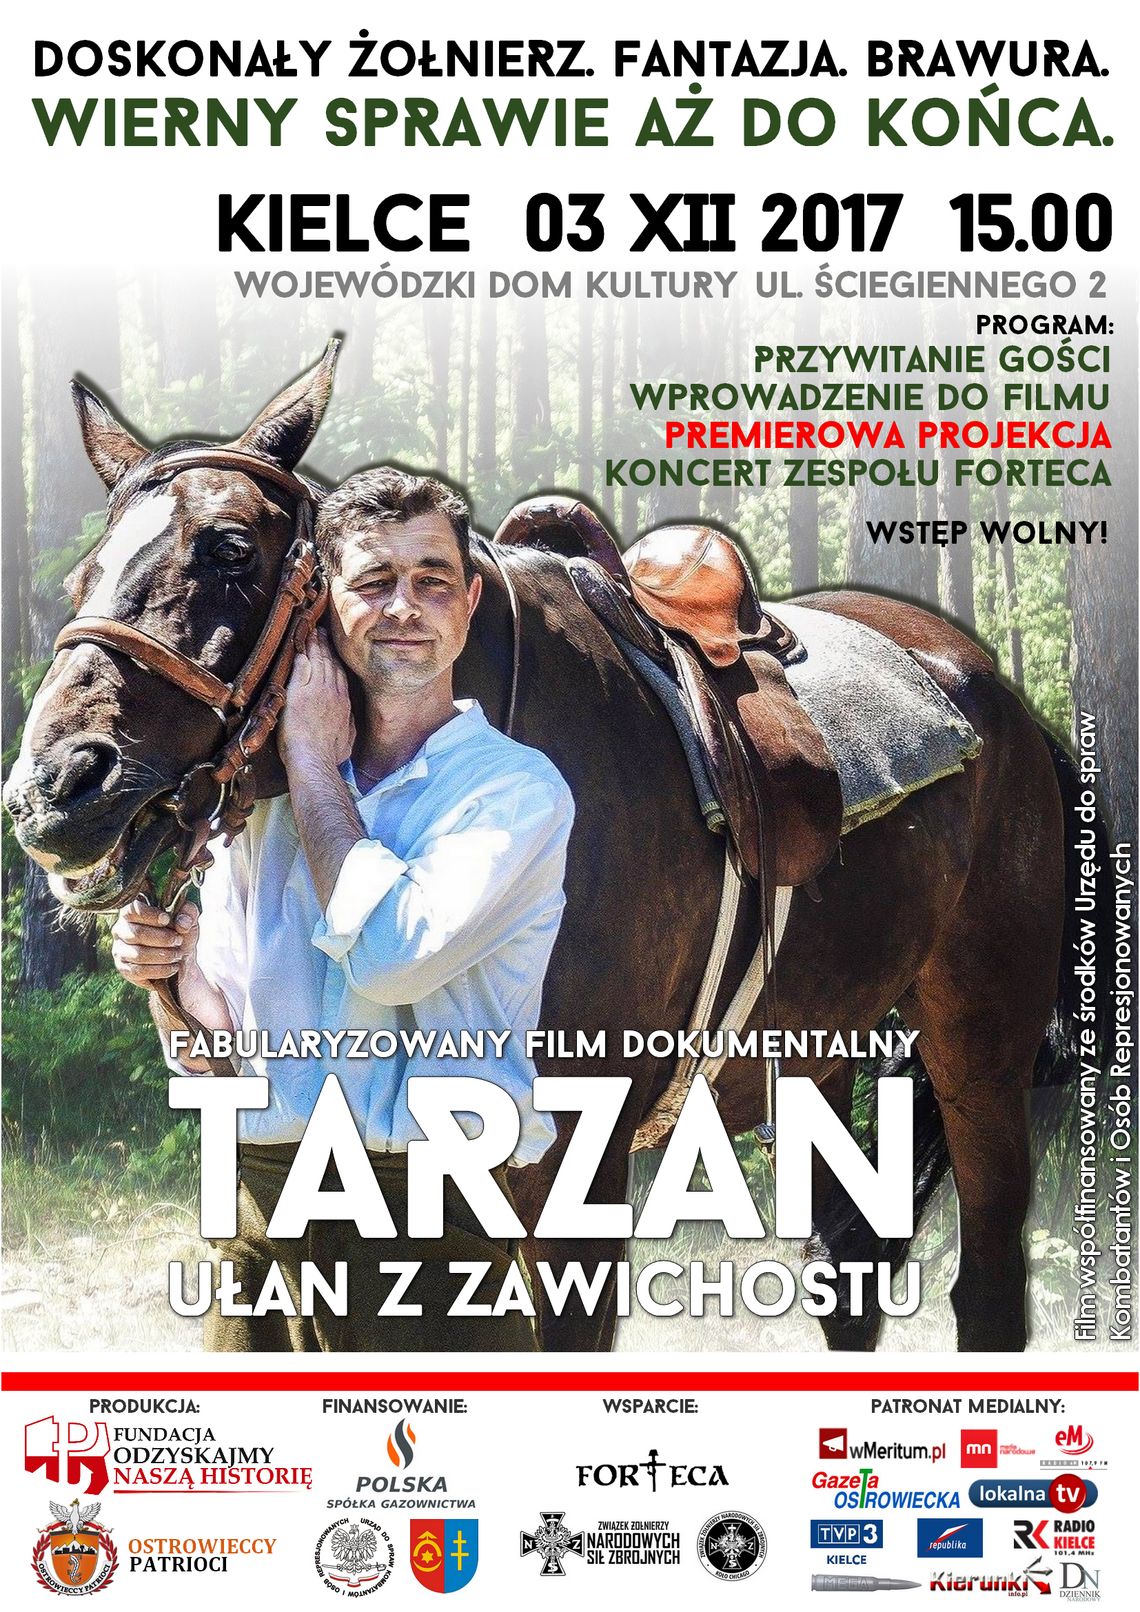 ,,Tarzan - ułan z Zawichostu" będzie miał swoją premierę